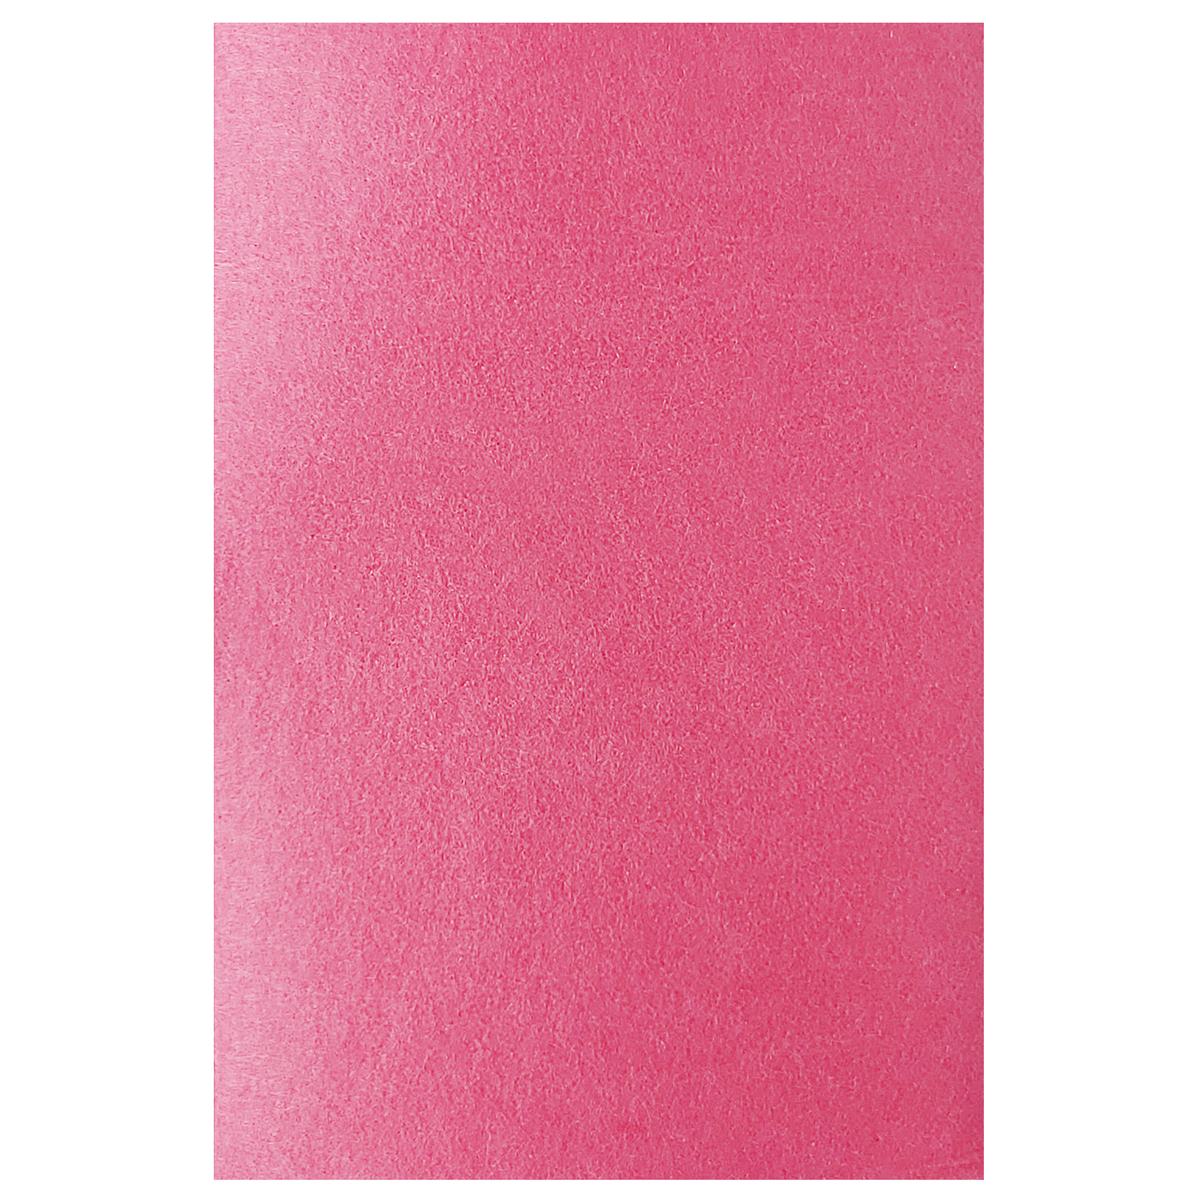 jags-mumbai Non-Woven & Felt Sheets A4 Nonwoven Felt Sheet Pink A4NFSPK